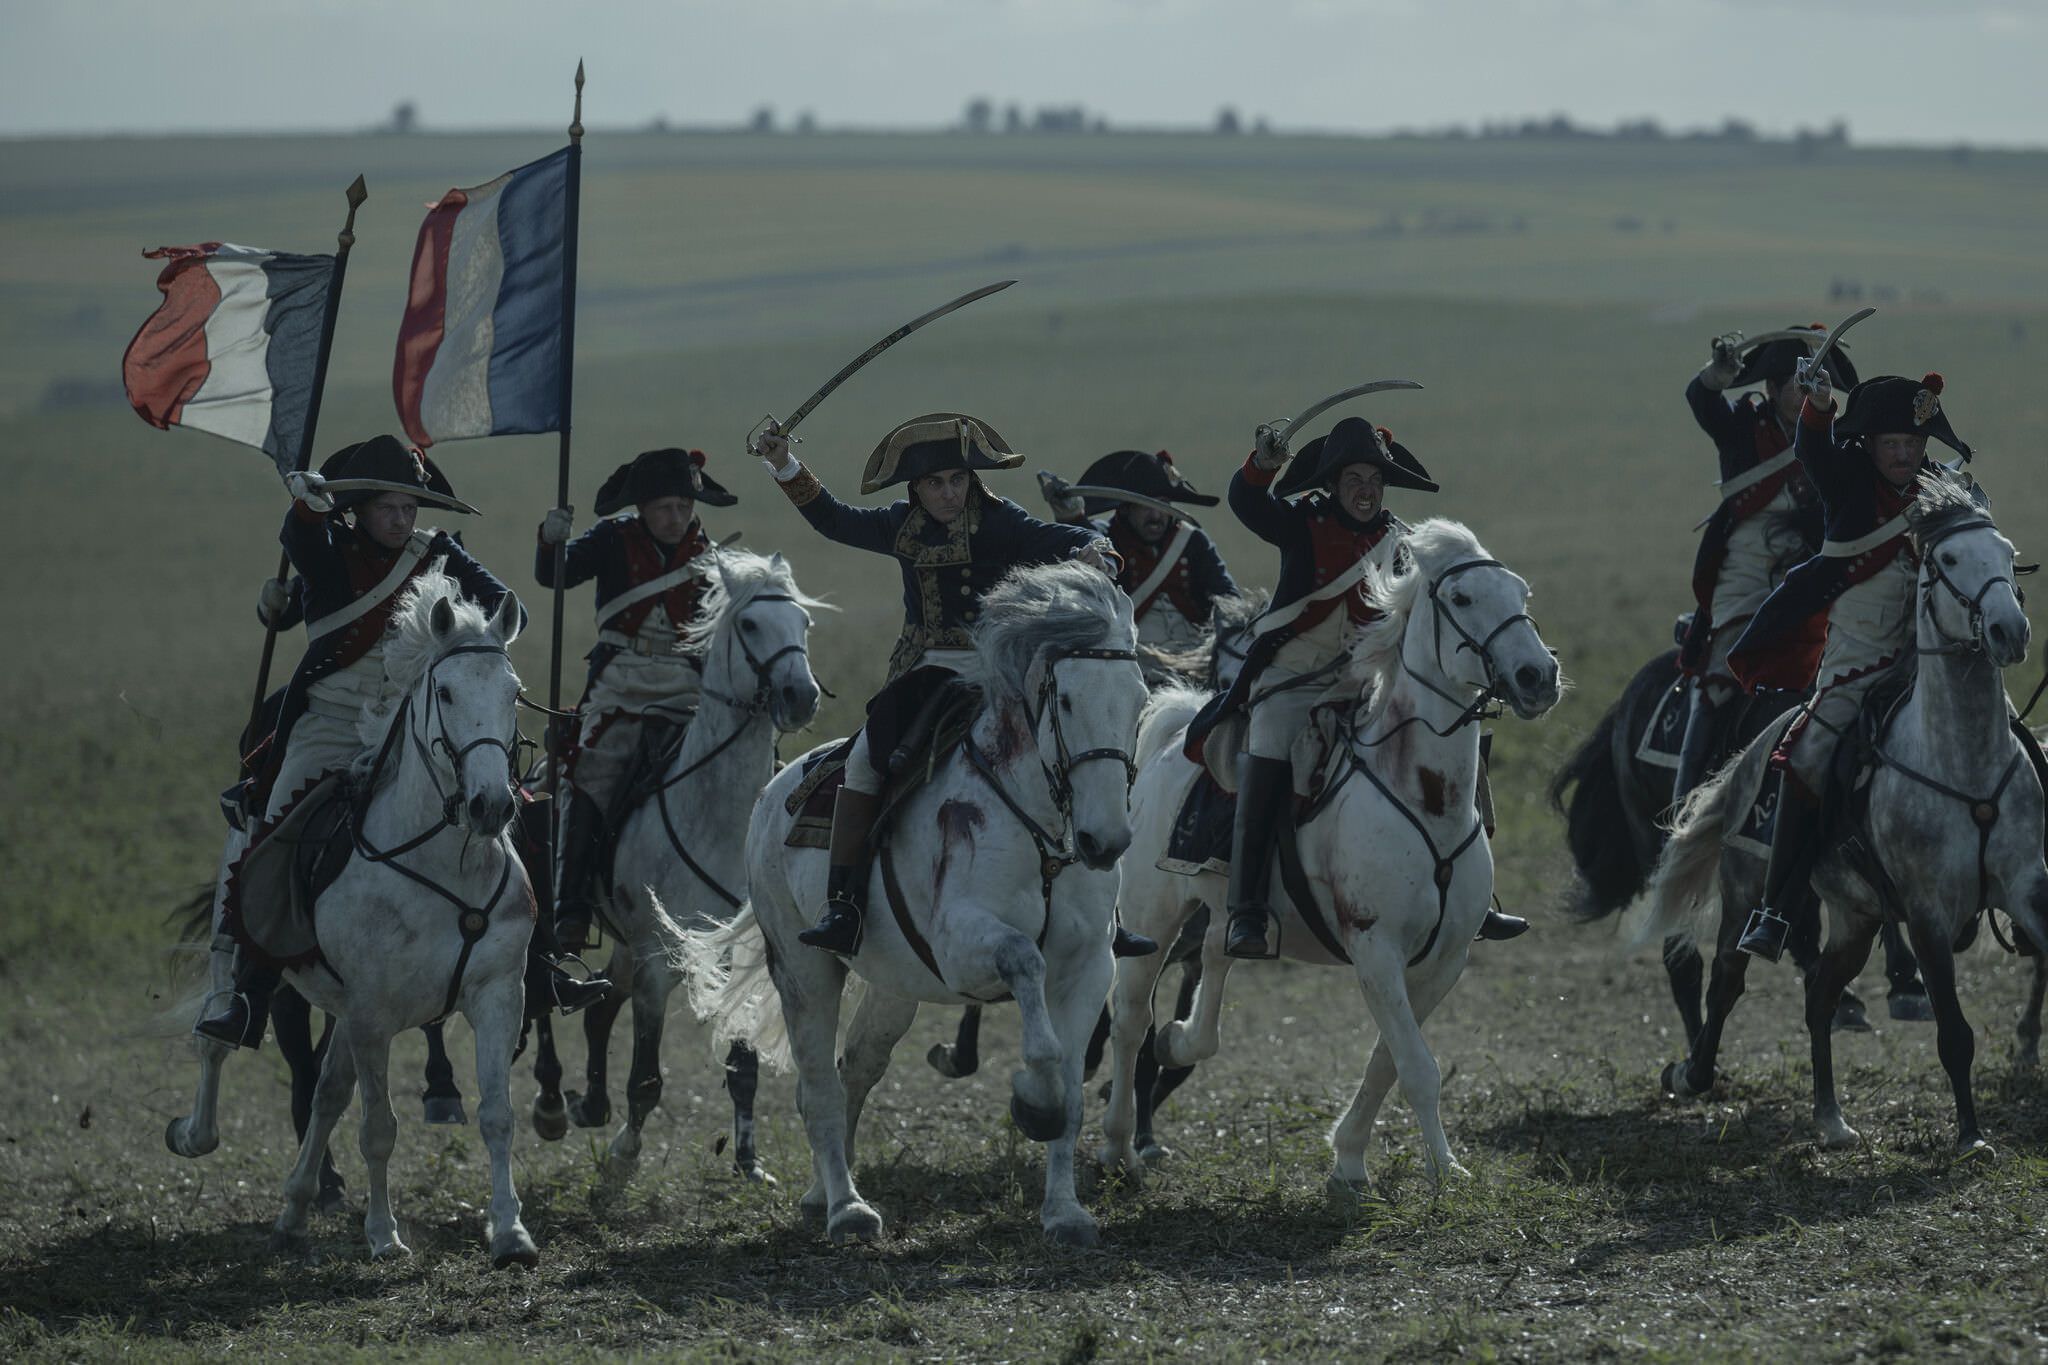 واکین فینیکس در نقش ناپلئون در حال سوارکاری درکنار نیروهایش در فیلم Napoleon ریدلی اسکات